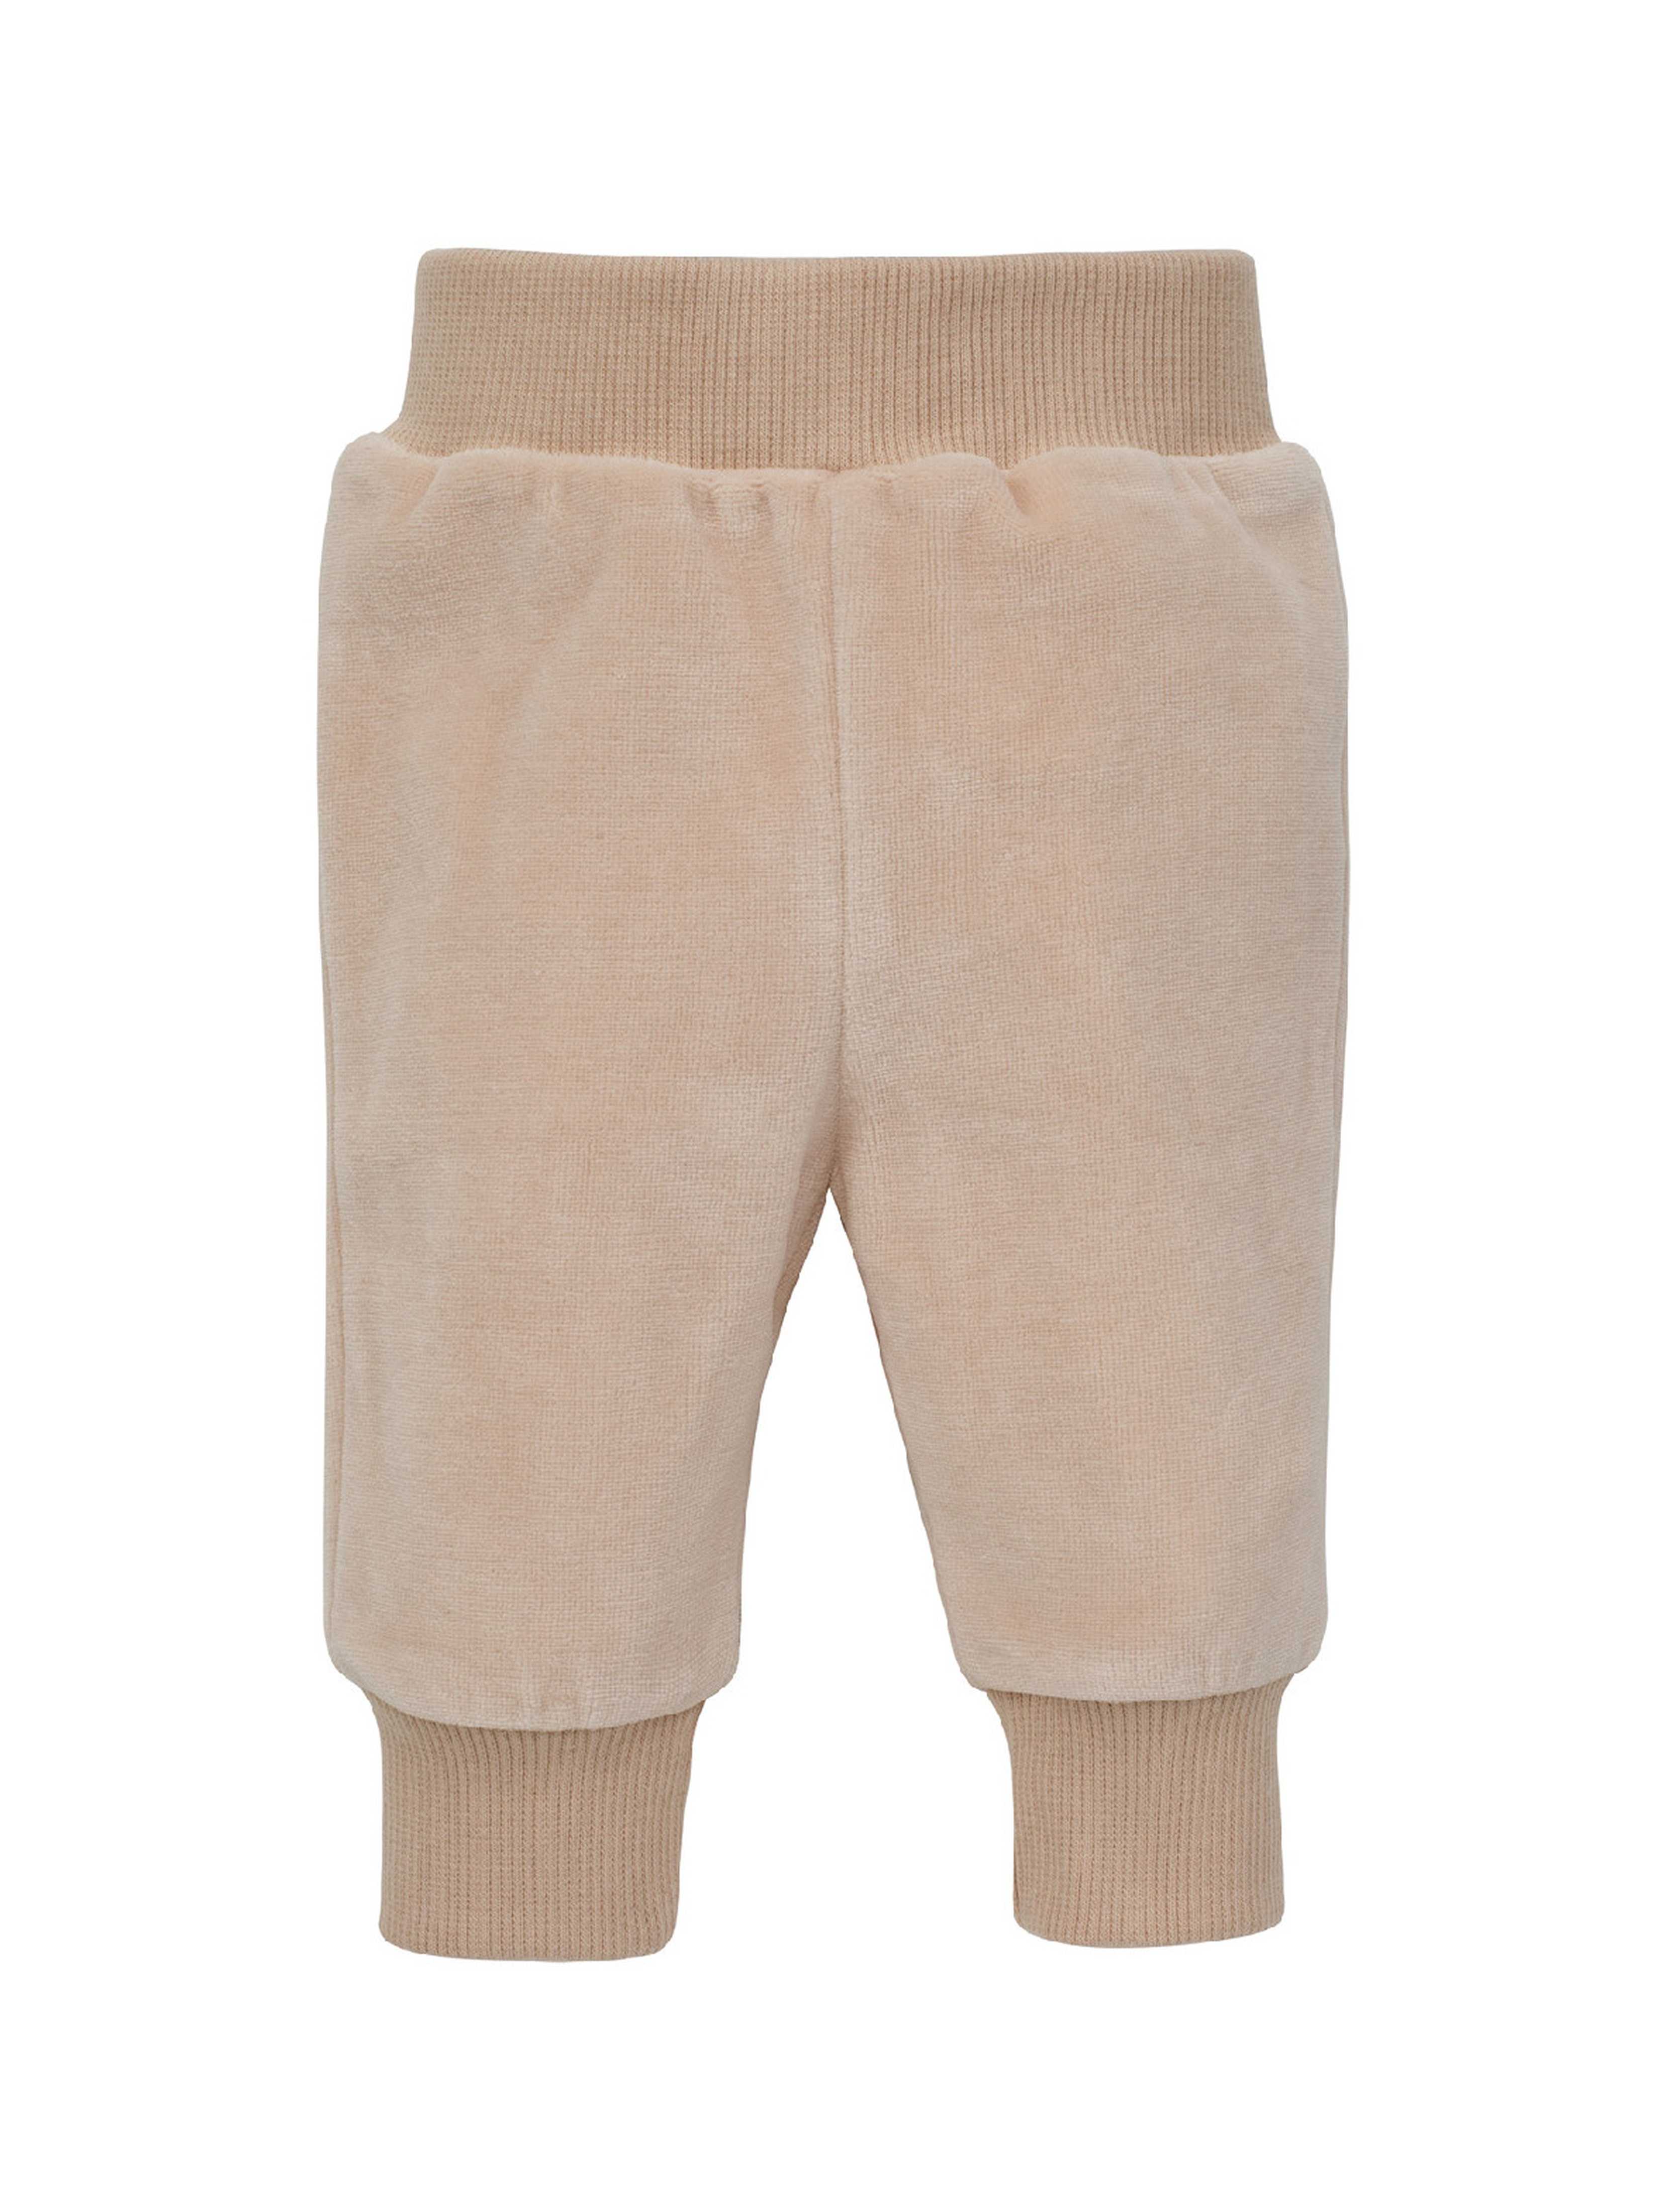 Ciepłe spodnie unisex welurwe beżowe LOVELY DAY BEIGE dla dziecka